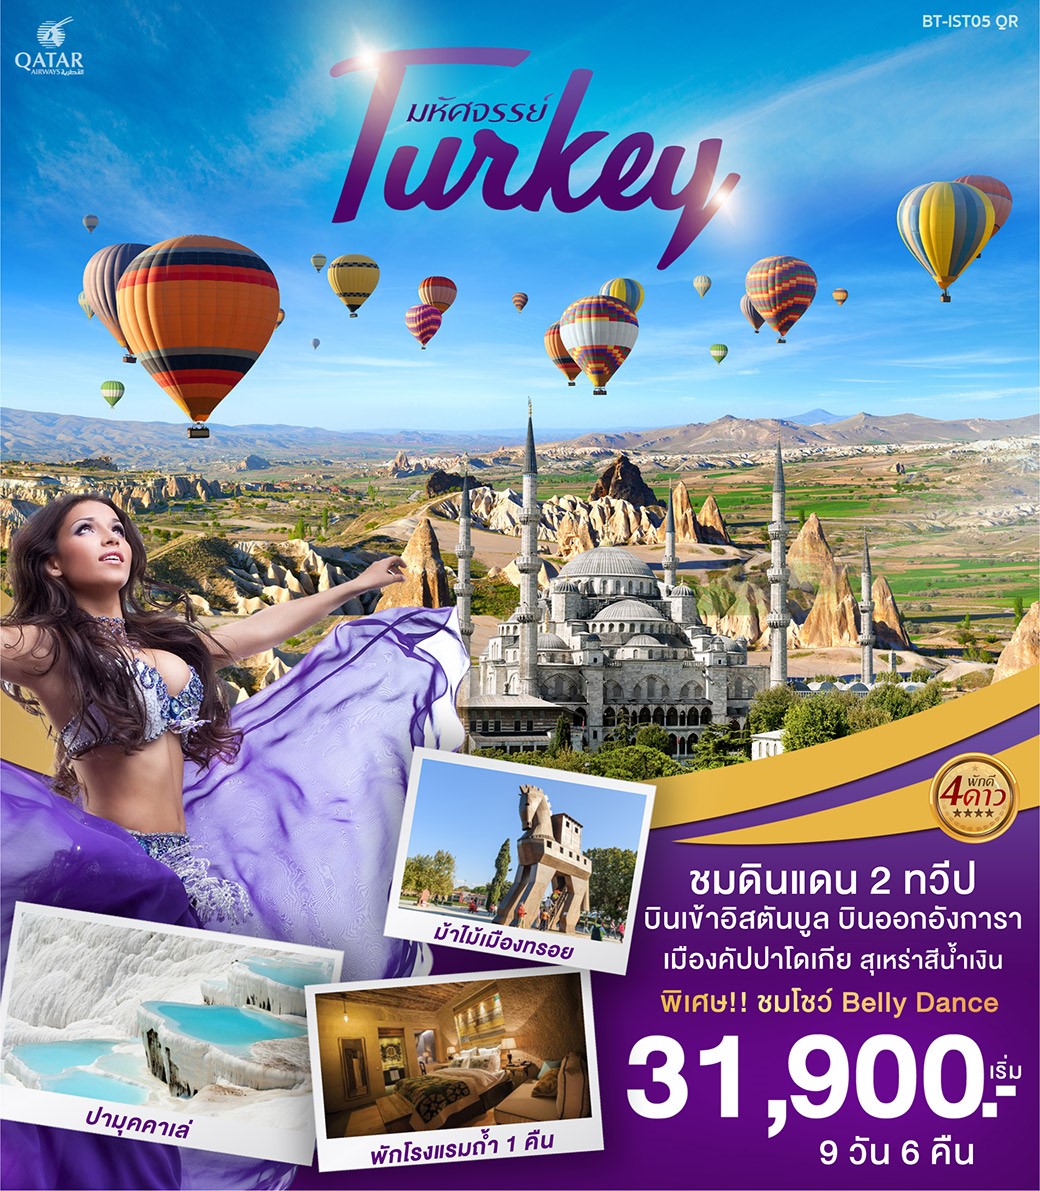 ทัวร์ตุรกี มหัศจรรย์ TURKEY ชมดินแดนสองทวีป 9วัน 6คืน (NOV-DEC19)(BT-IST05_QR)